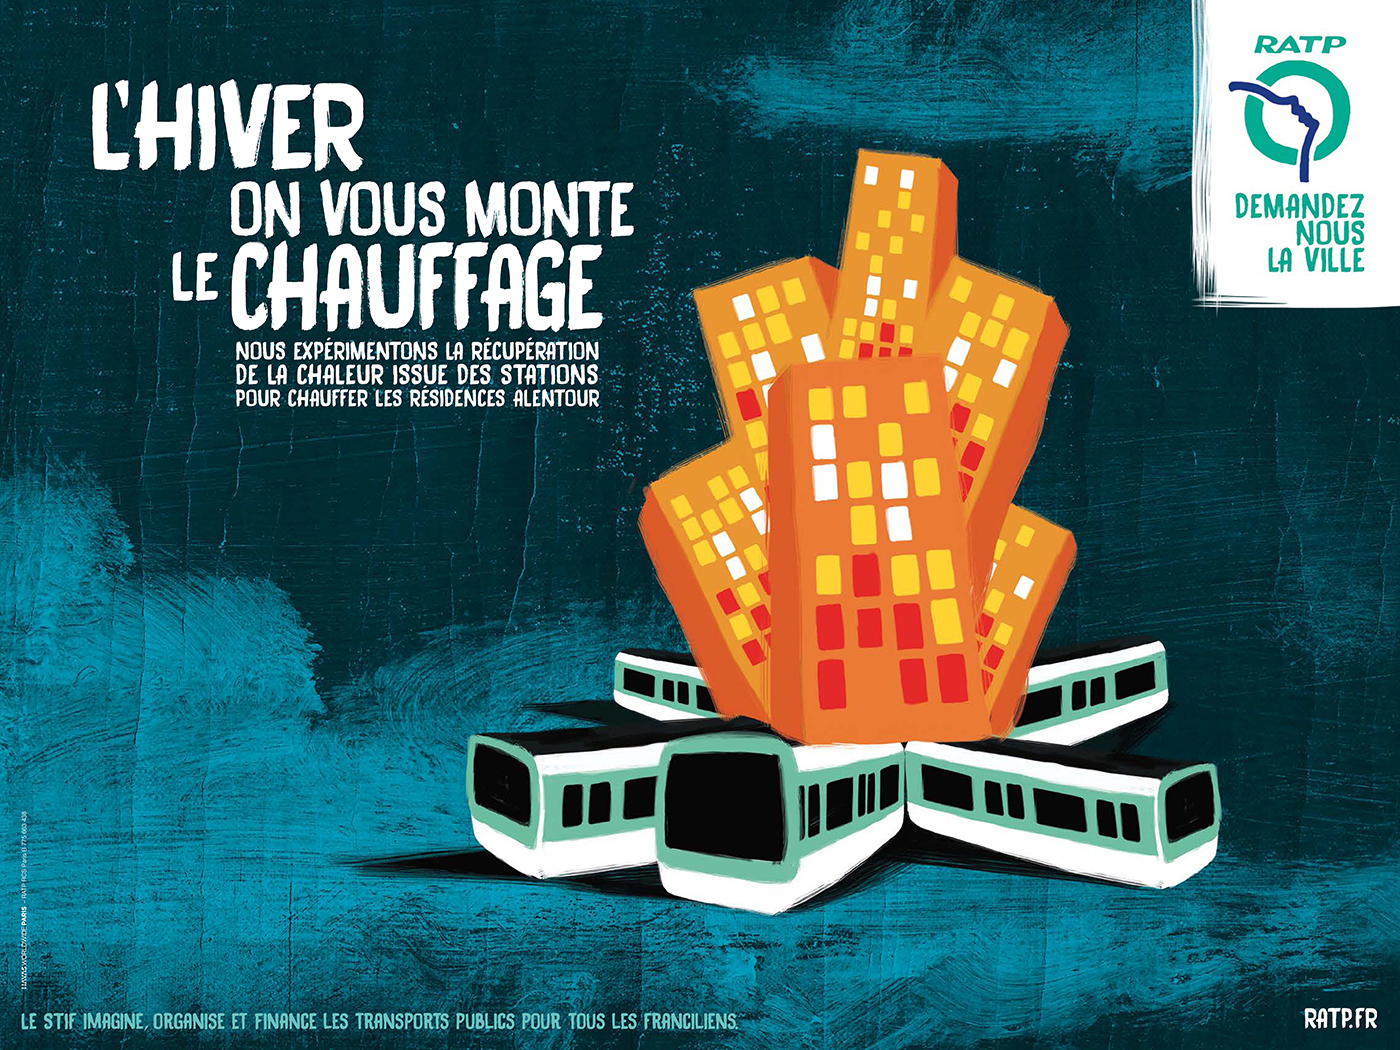 ratp-publicite-affichage-environnement-COP21-STIF-franciliens-demandez-nous-la-ville-agence-havas-paris-1